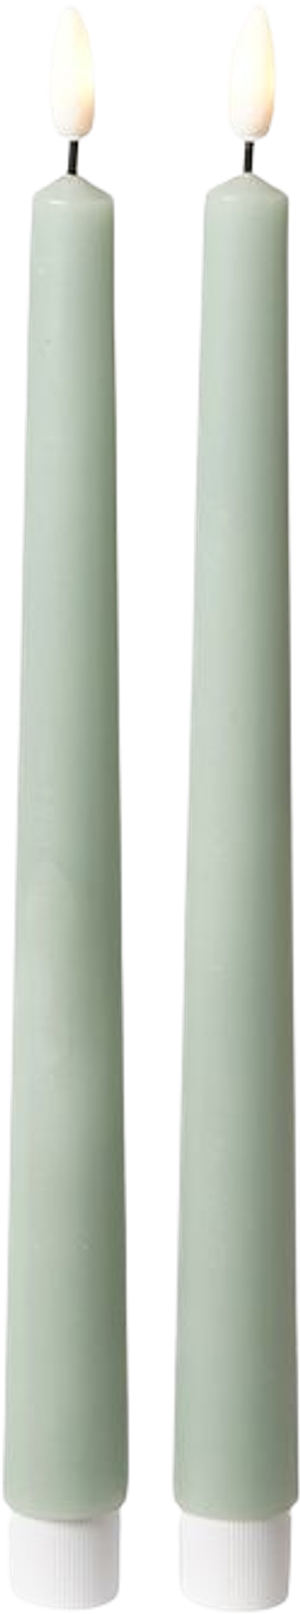 Dacore stagelys sæt med 2 stk. H28 cm